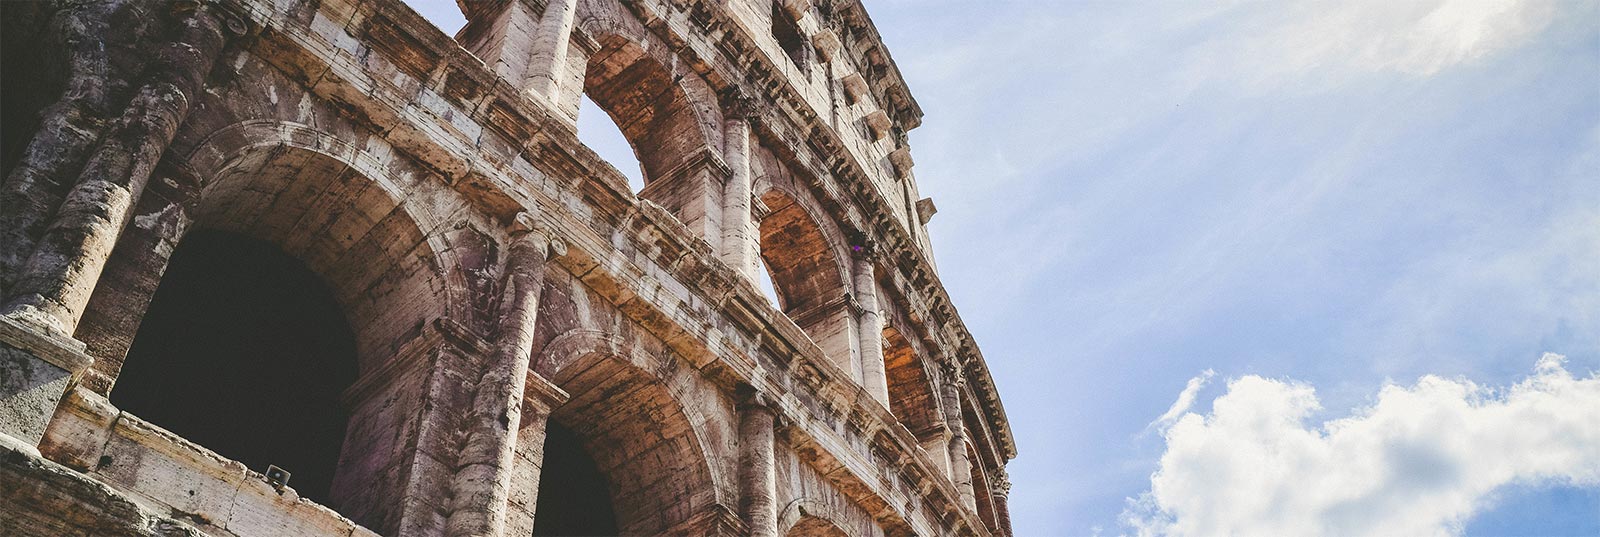 Guía turística de Roma